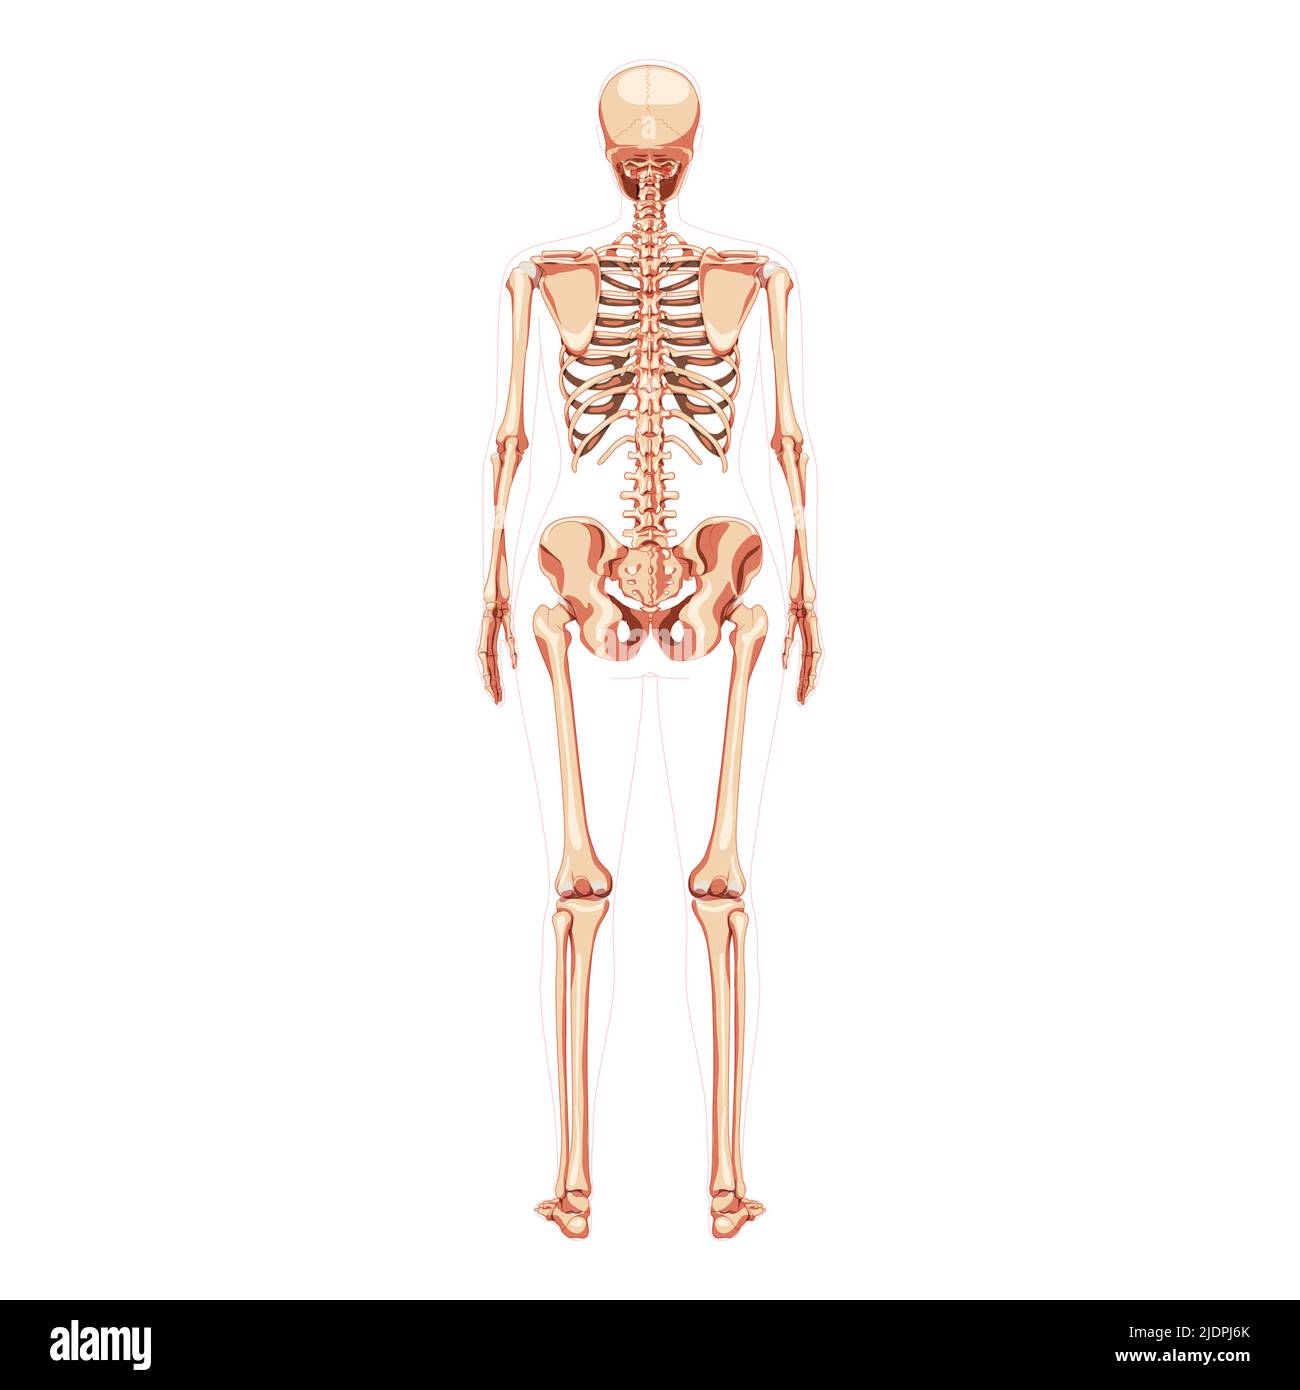 Donne Skeleton ossa del corpo umano di concetto femminile. Vista posteriore della donna dorsale. 3D immagine vettoriale realistica anatomicamente corretta della ragazza piatta di anatomia isolata su bianco Illustrazione Vettoriale